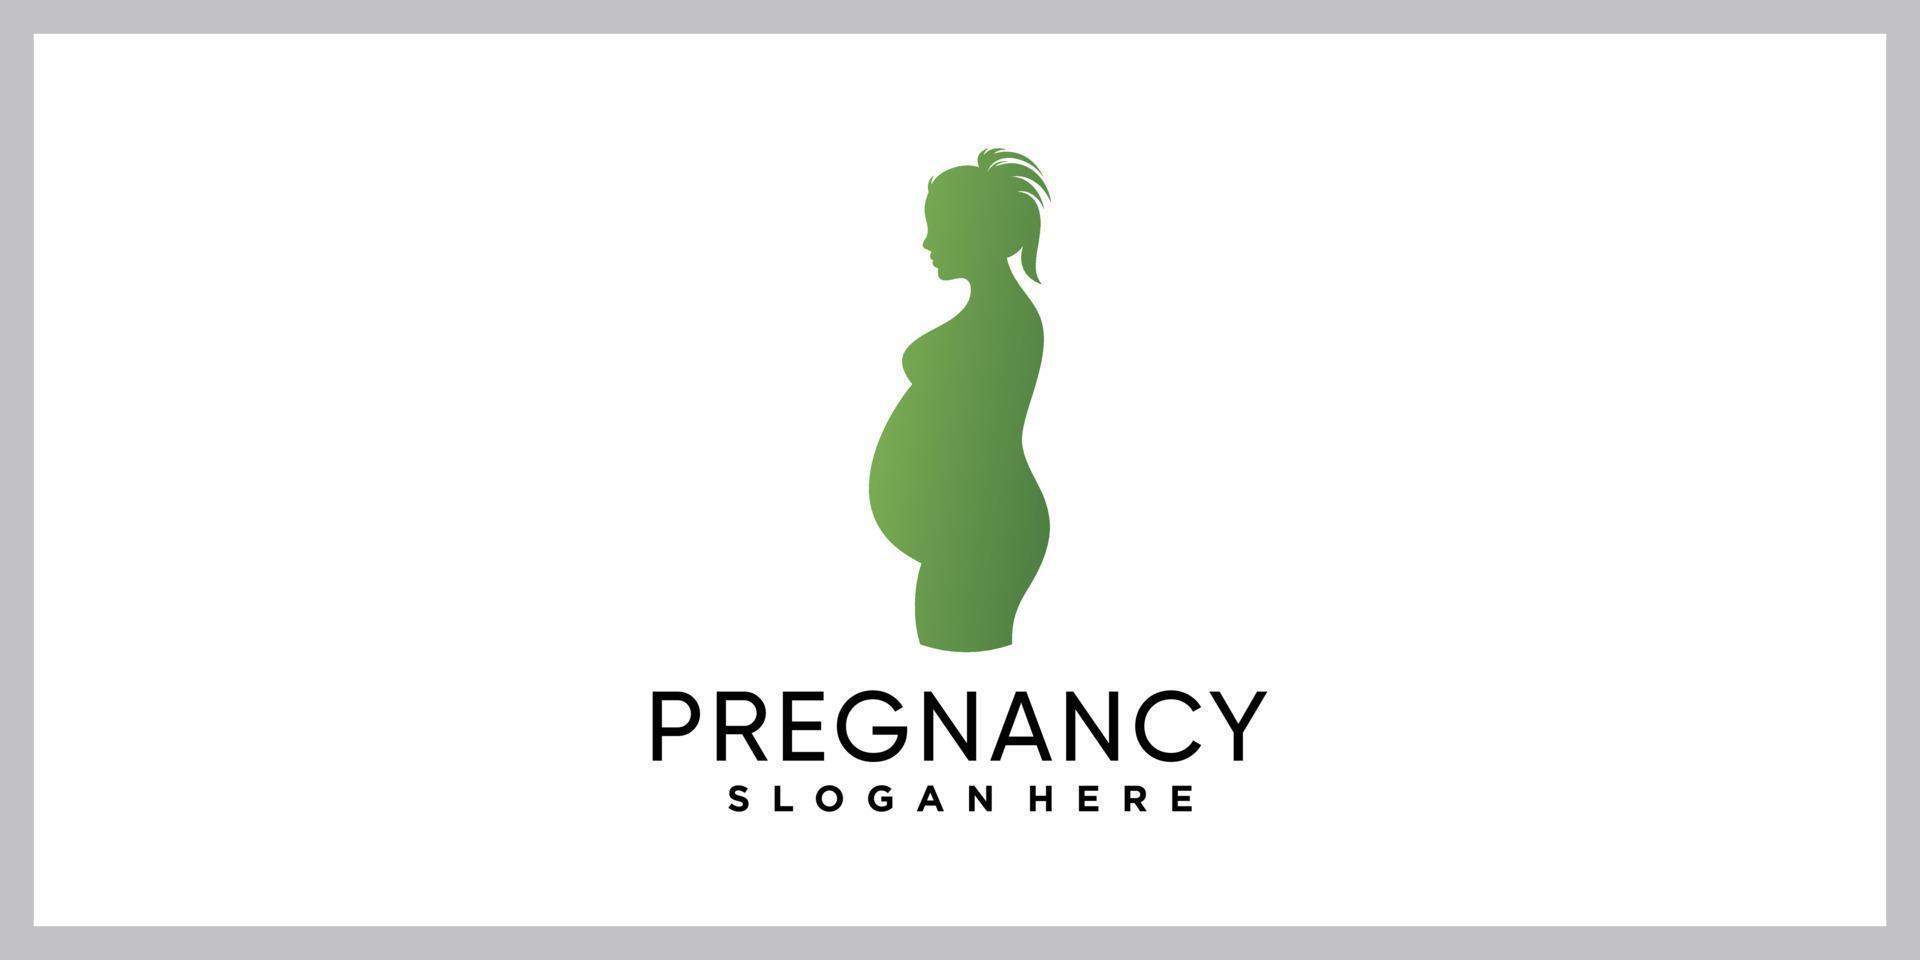 modello di progettazione logo gravidanza donna con un concetto moderno creativo vettore